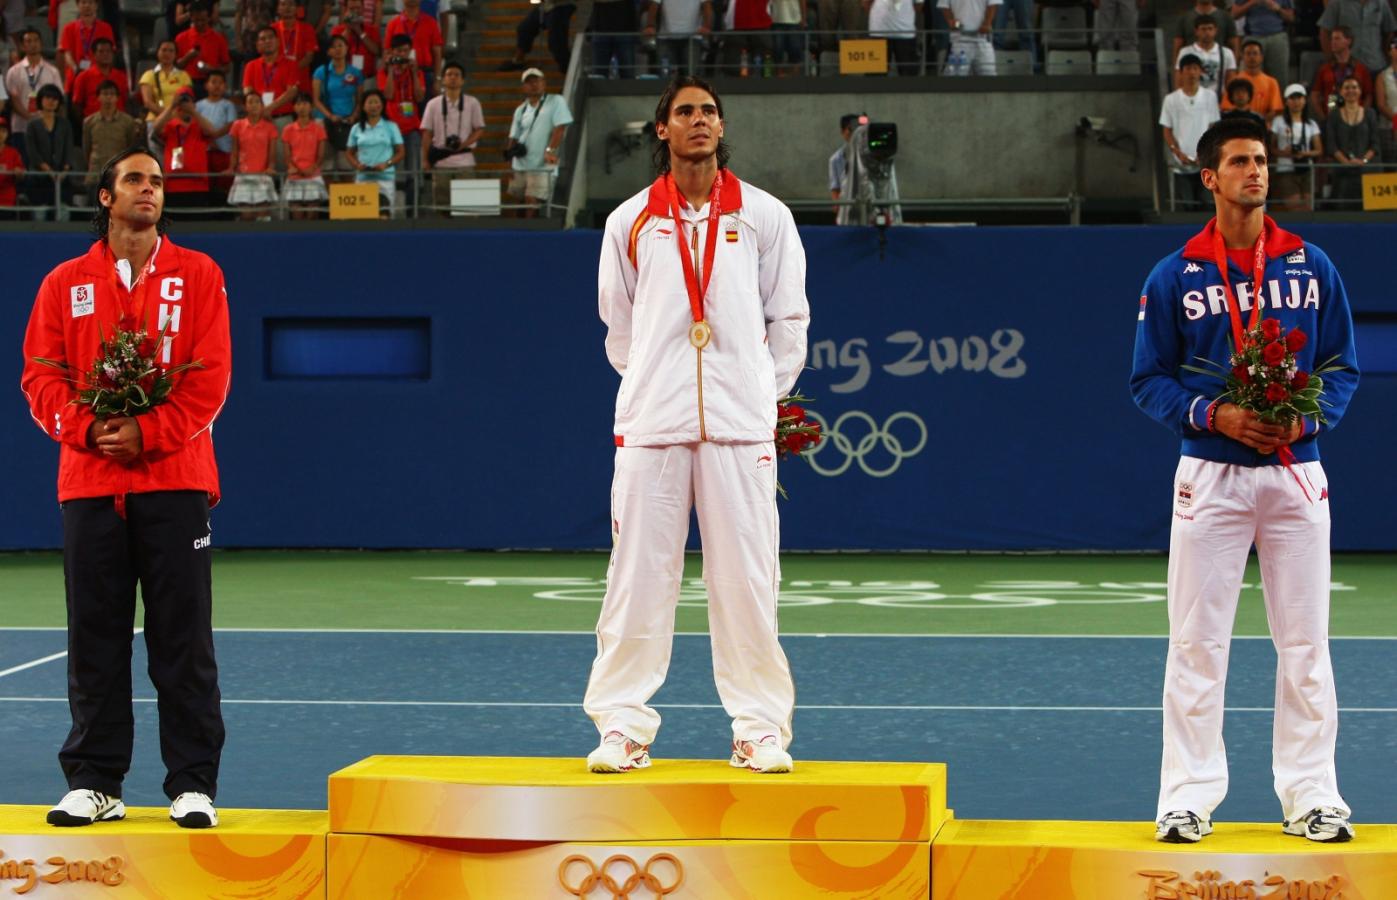 Imagen El bronce en 2008 seguirá siendo el único podio Olímpico para Nole